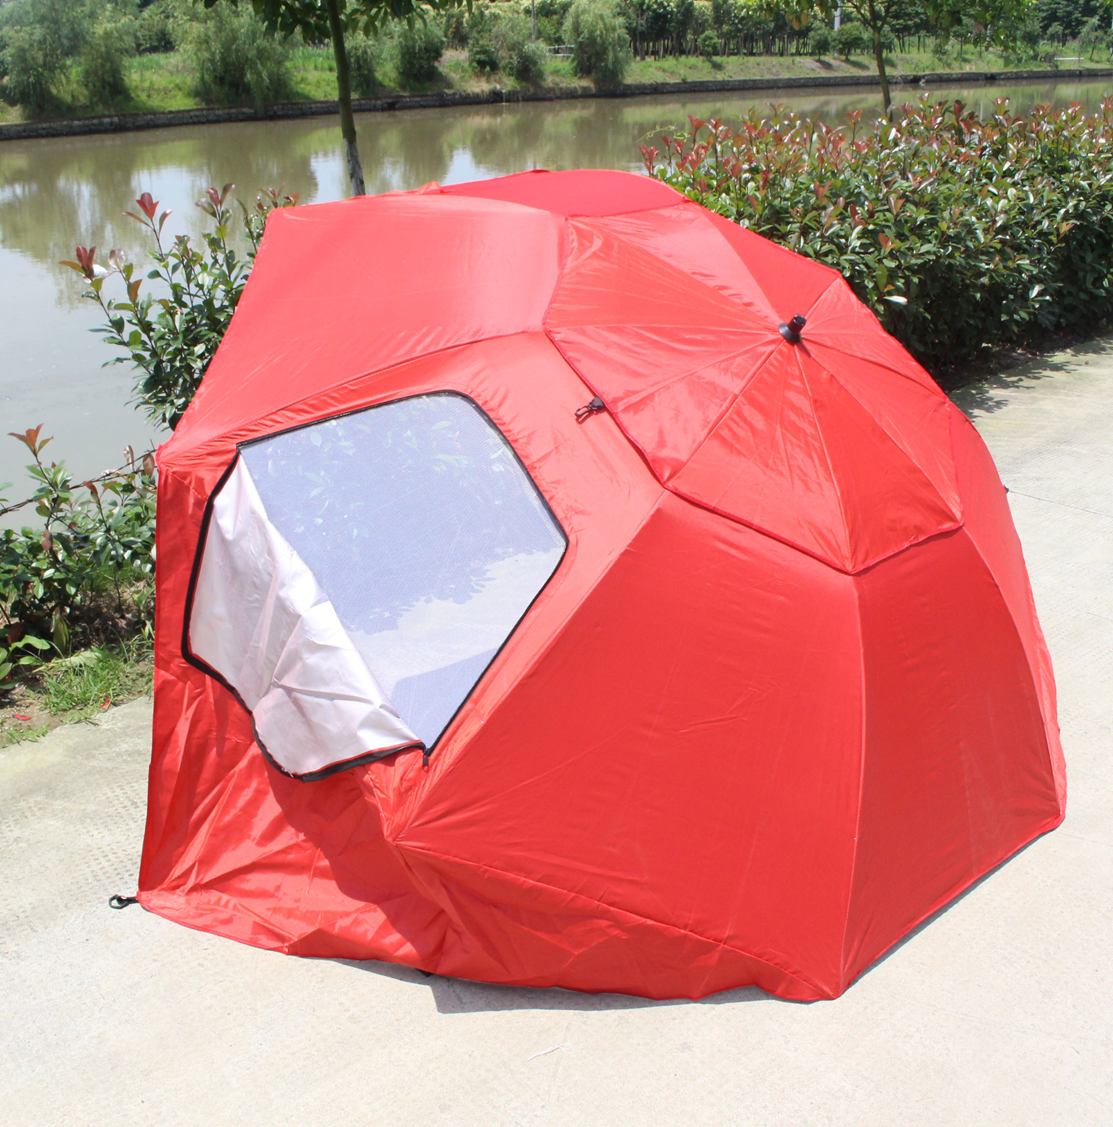 Зонт-палатка 240 см, окошки из ПВХ, 4 колышка, сумка, арт. LHBU-240SPB